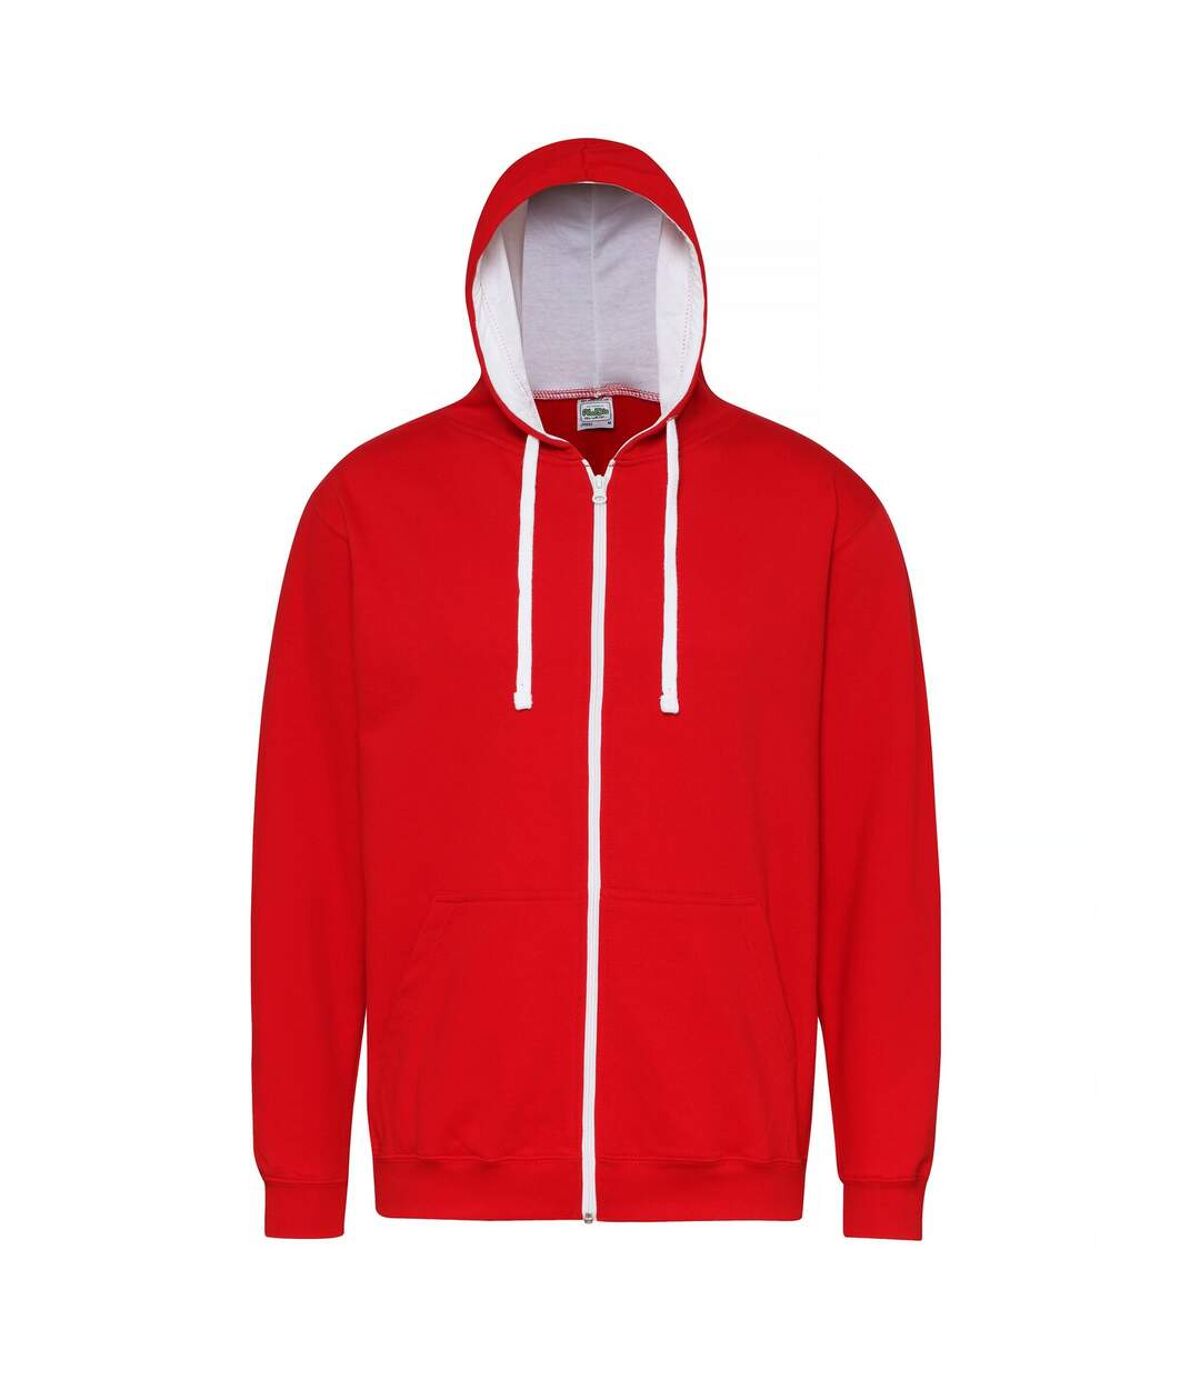 Awdis - Sweatshirt à capuche et fermeture zippée - Homme (Rouge feu/Blanc arctique) - UTRW182